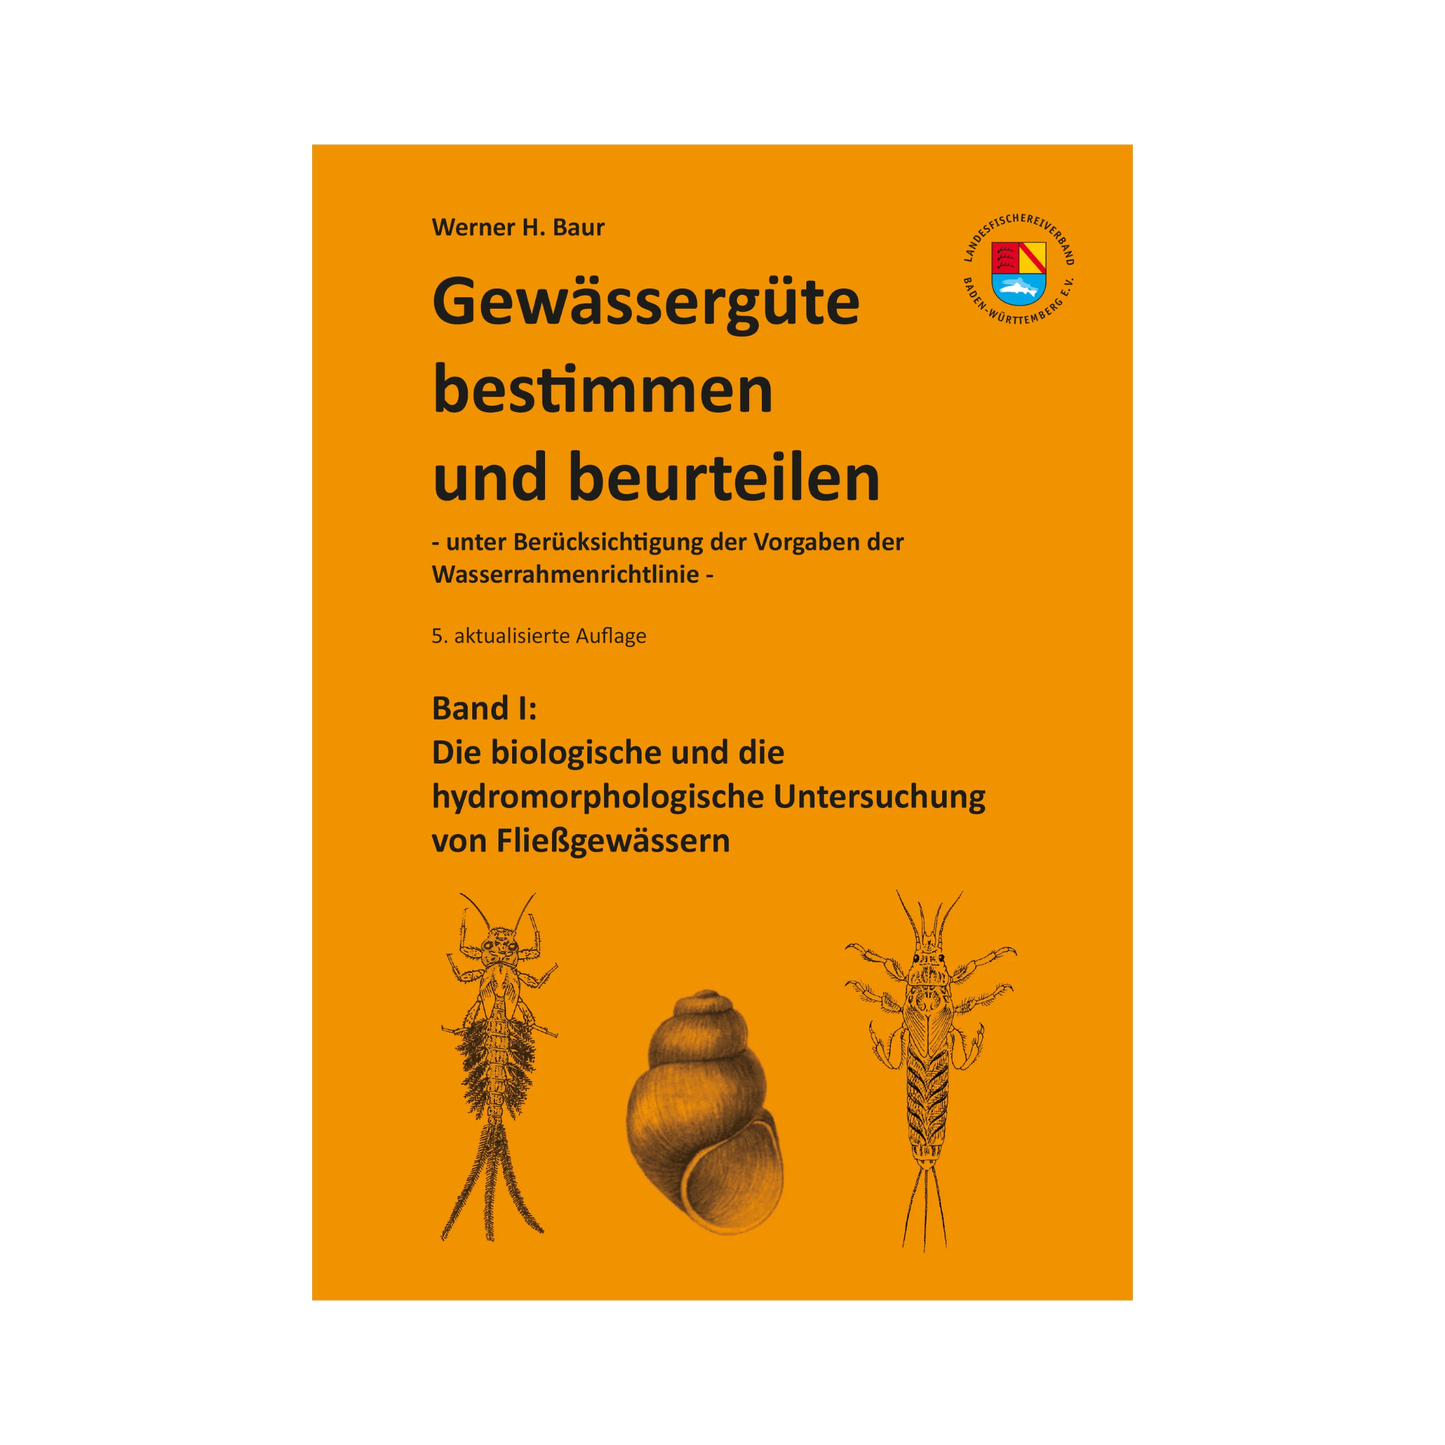 LFV BW Gewässergüte bestimmen und beurteilen - Band 1 (Werner H. Baur)